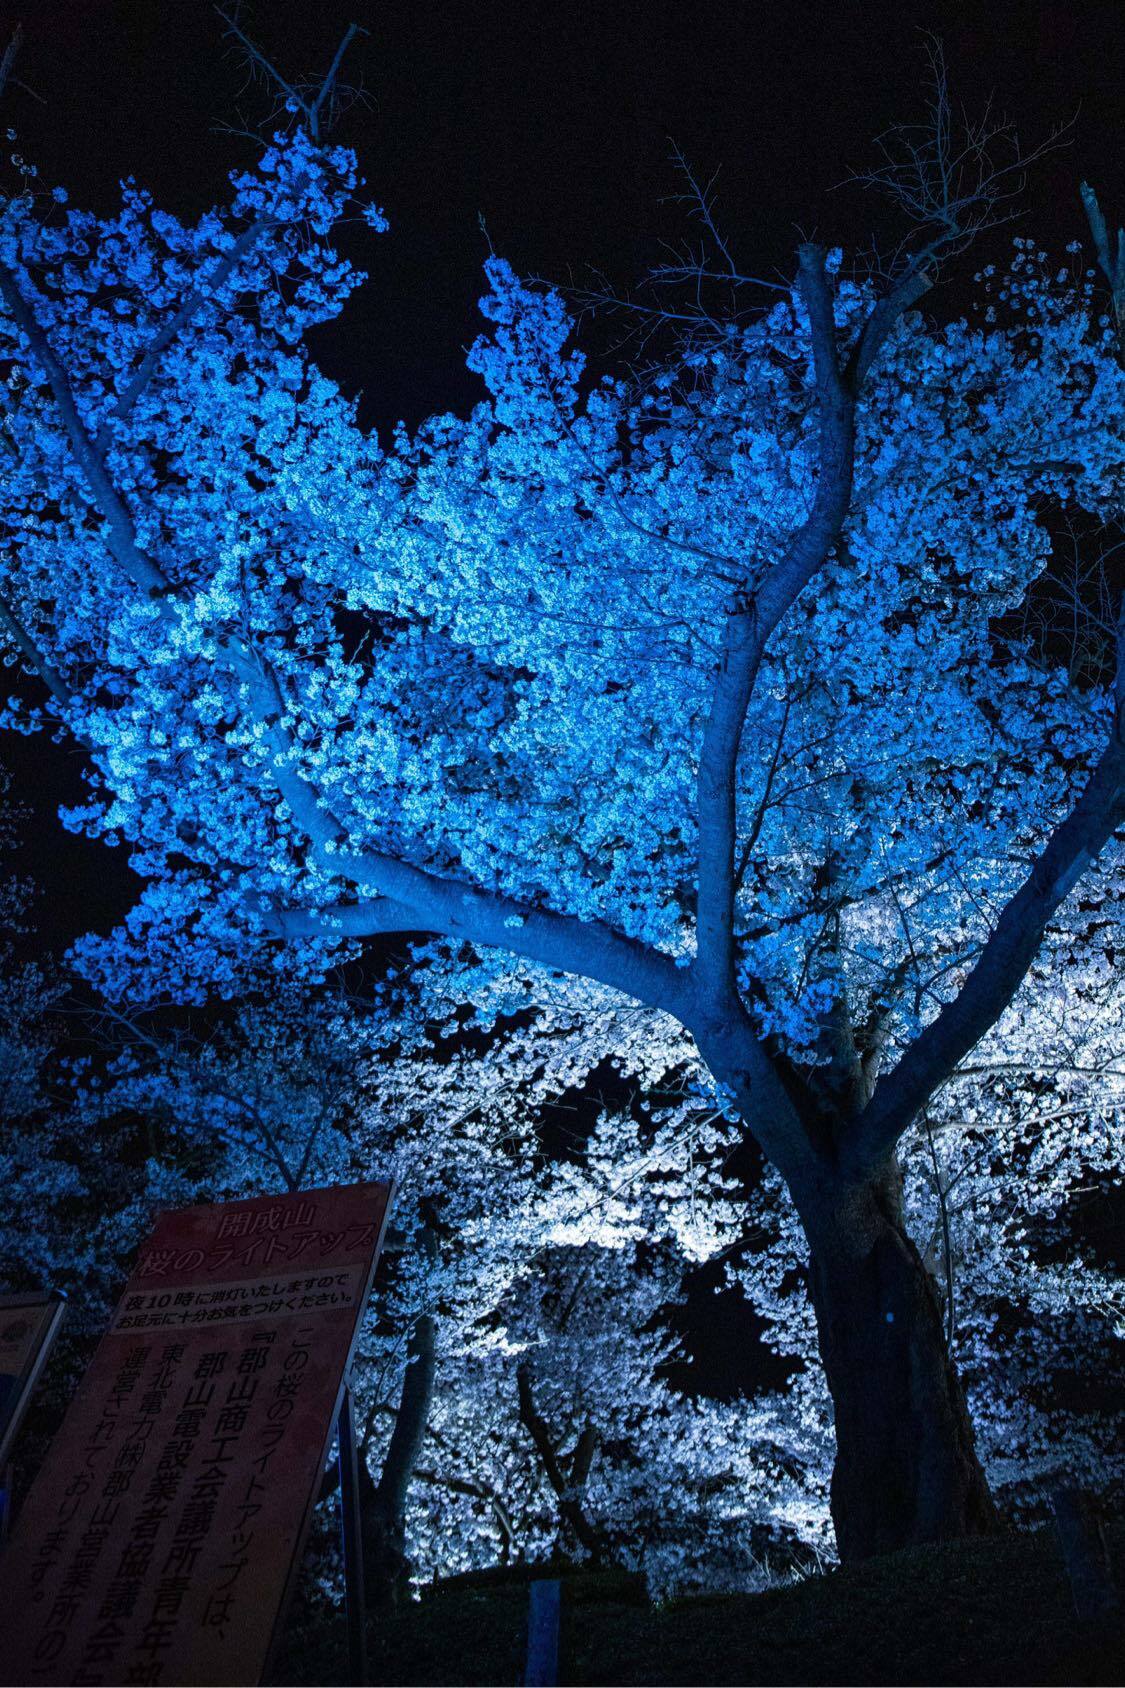 ブルーライトが映える満開の桜。23日までライトアップしているので、桜が散ってからも楽しめます